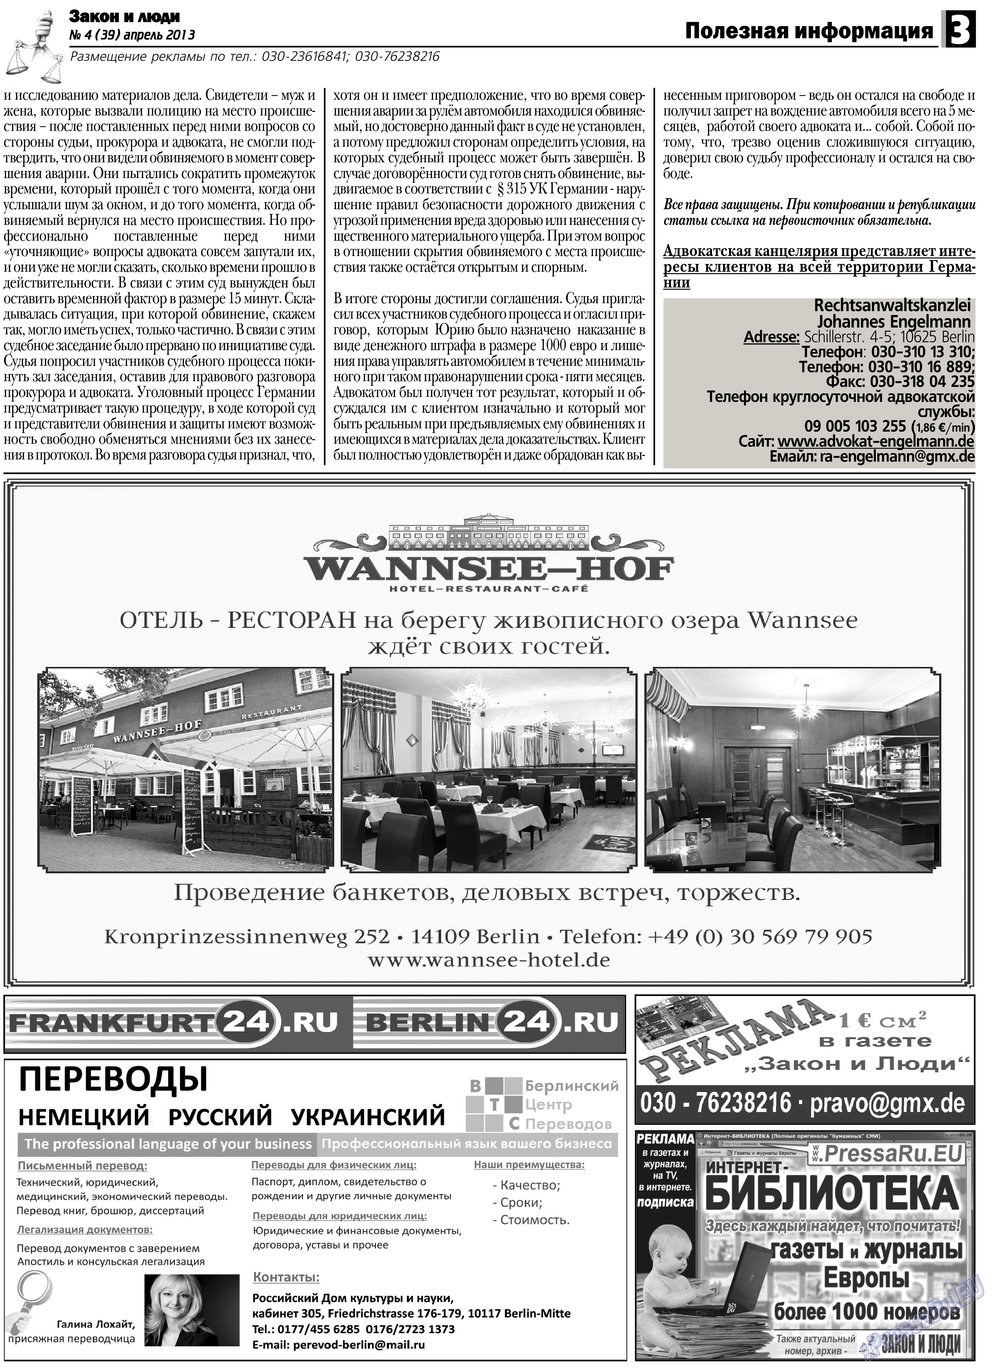 Закон и люди, газета. 2013 №4 стр.3